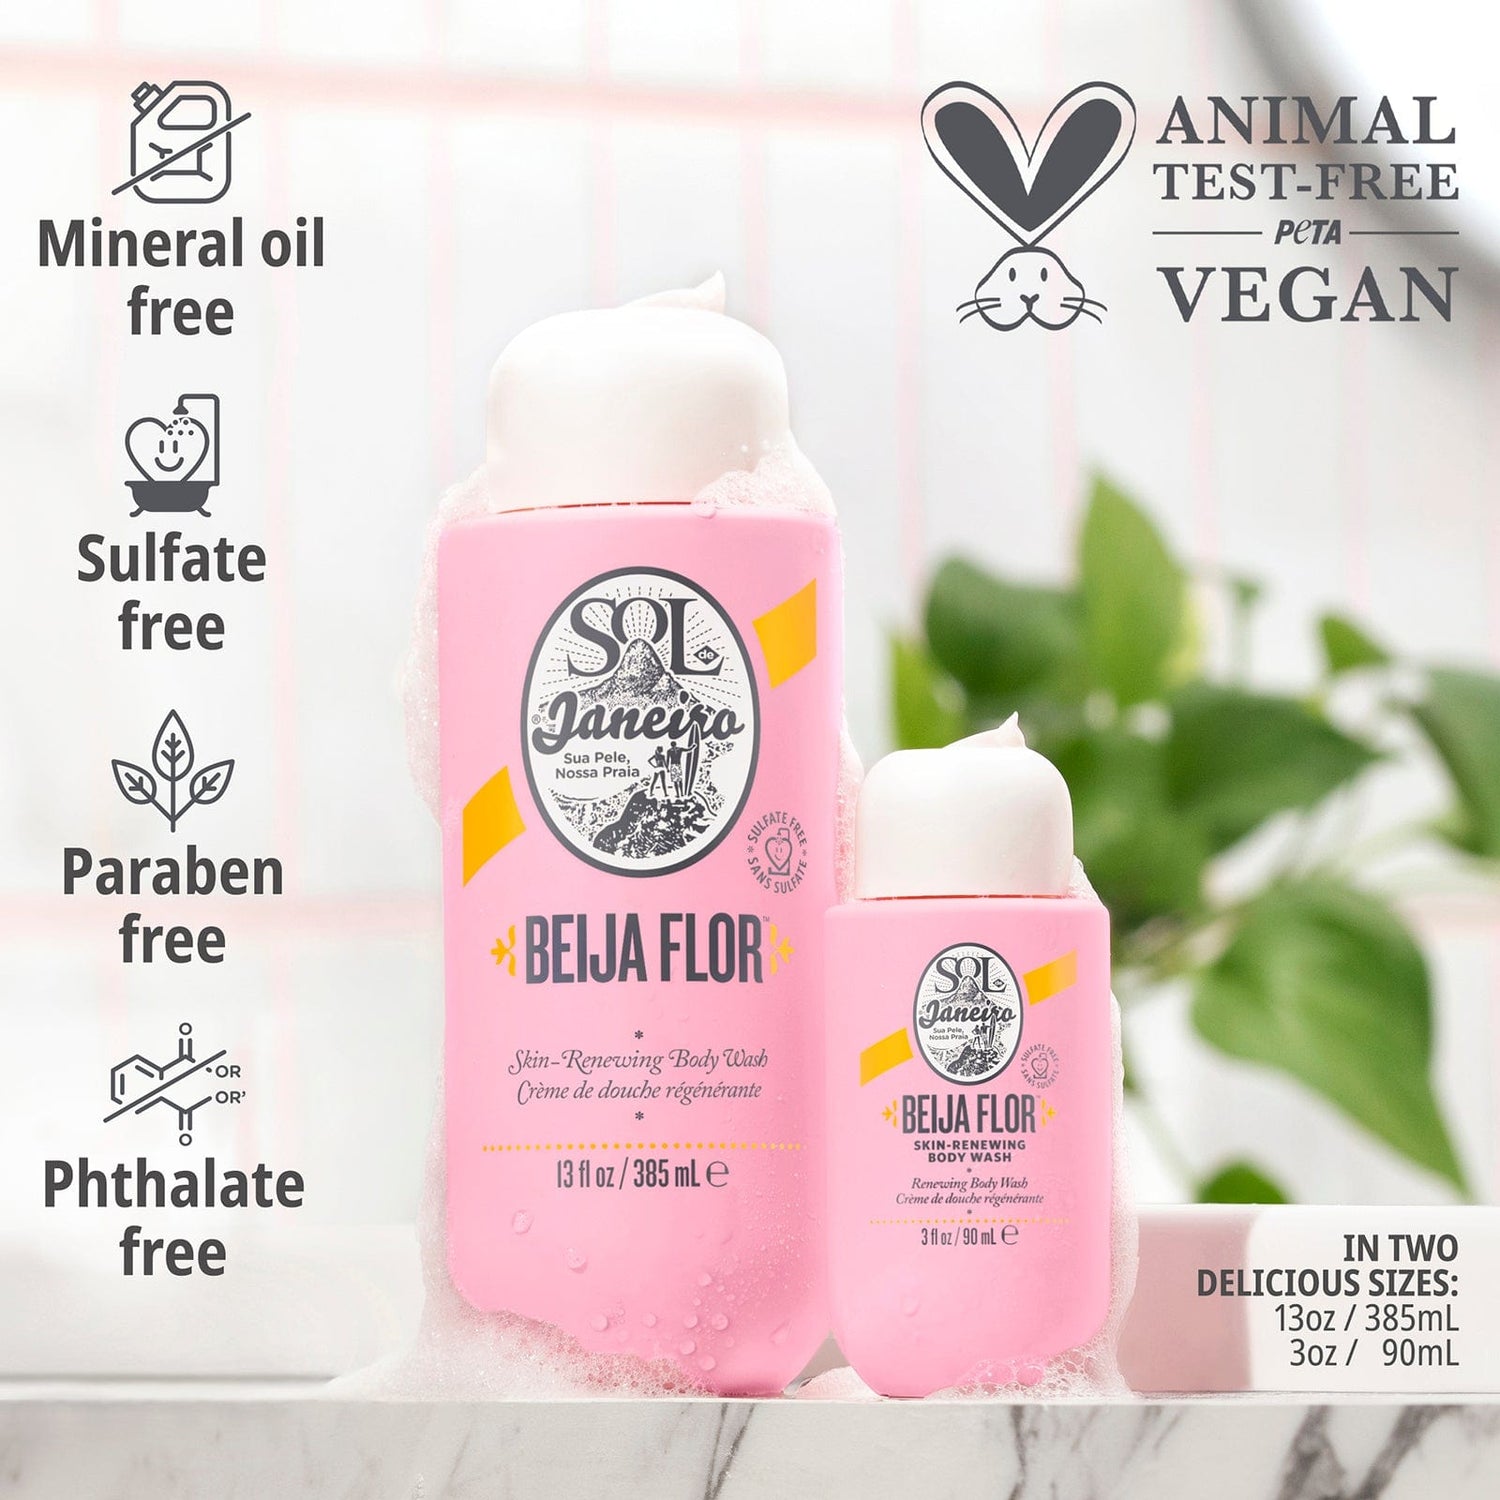 animal test-free, peta vegan - mineral oil free - sulfate free - paraben free - Phthalate free - in Two delicious sizes: 13oz / 385mL , 3oz / 90mL